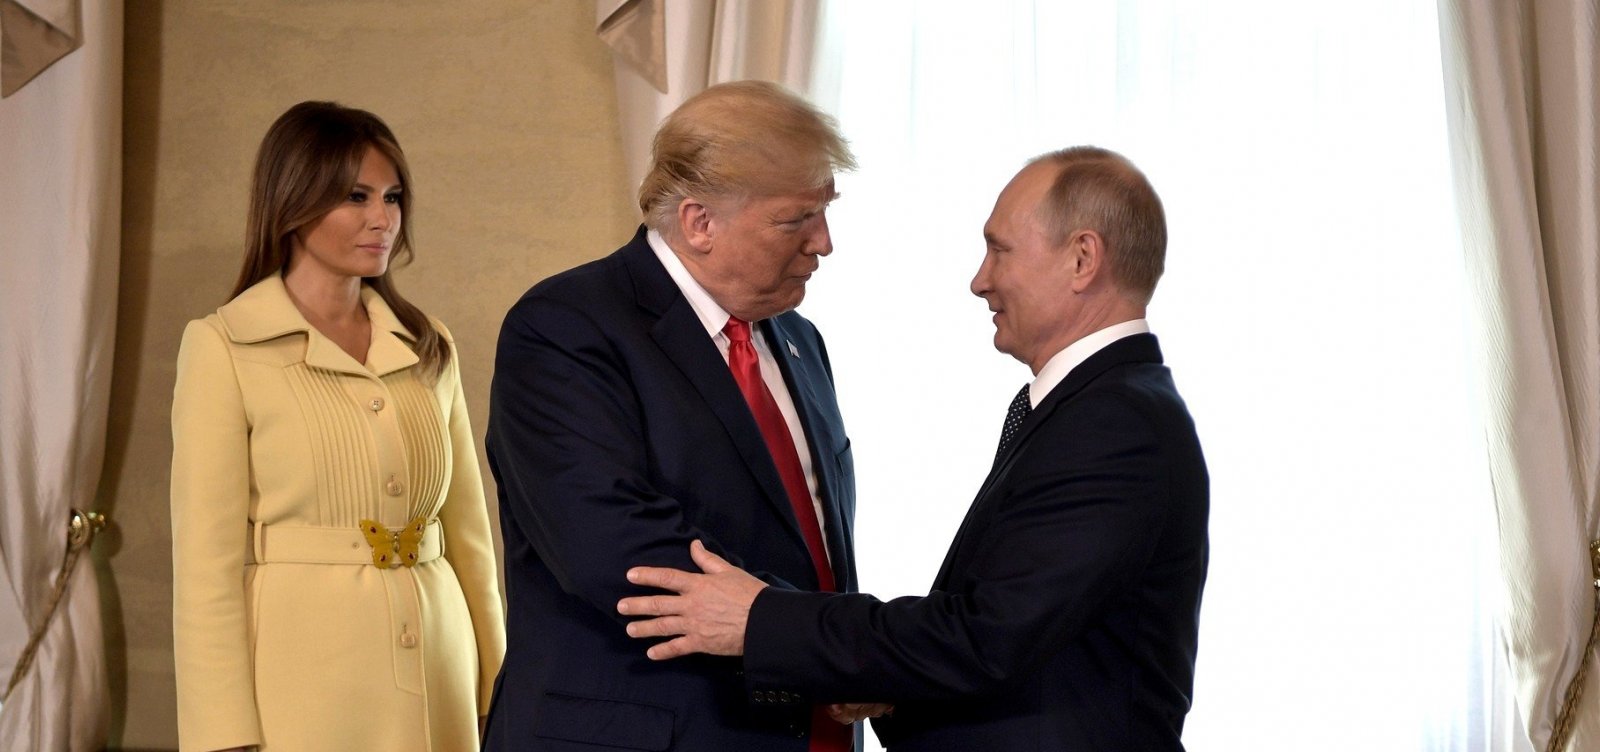 Trump diz que considera Putin responsável por interferência russa nas eleições de 2016